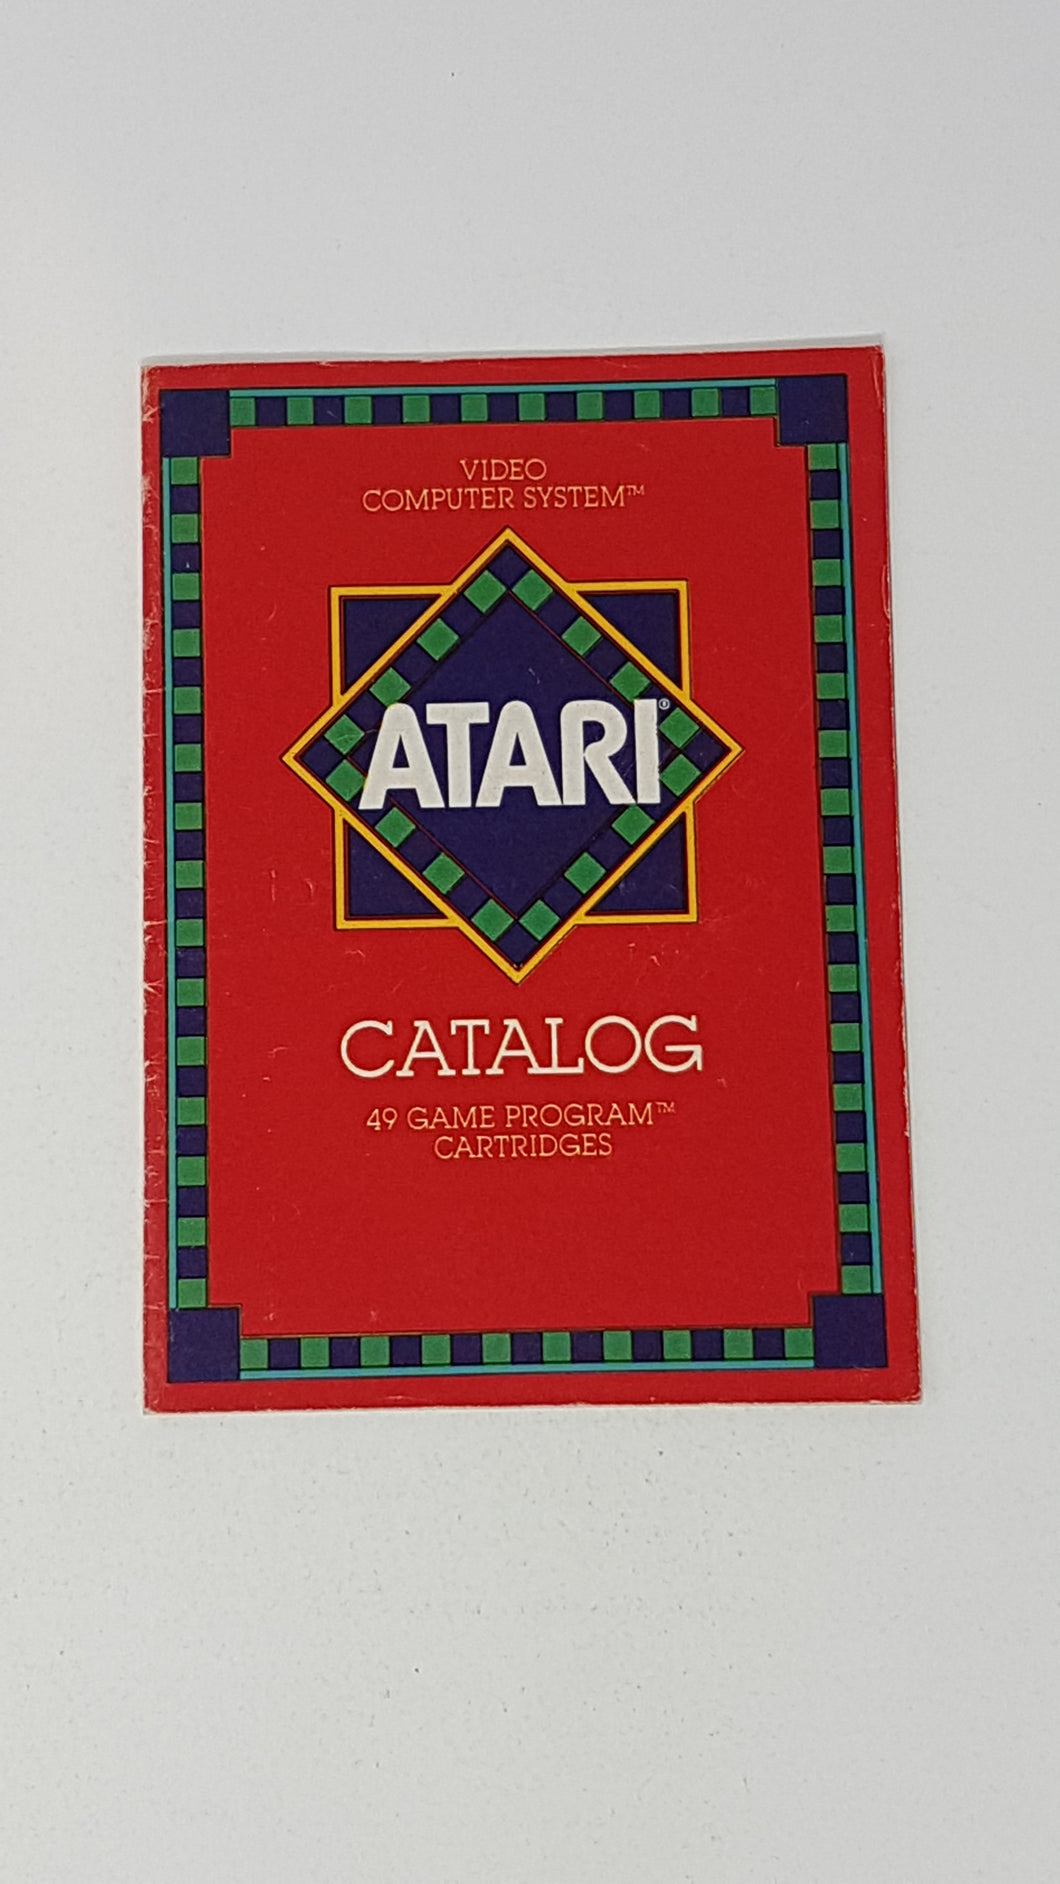 Atari 2600 Catalogue Système informatique vidéo 49 cartouches de programme de jeu